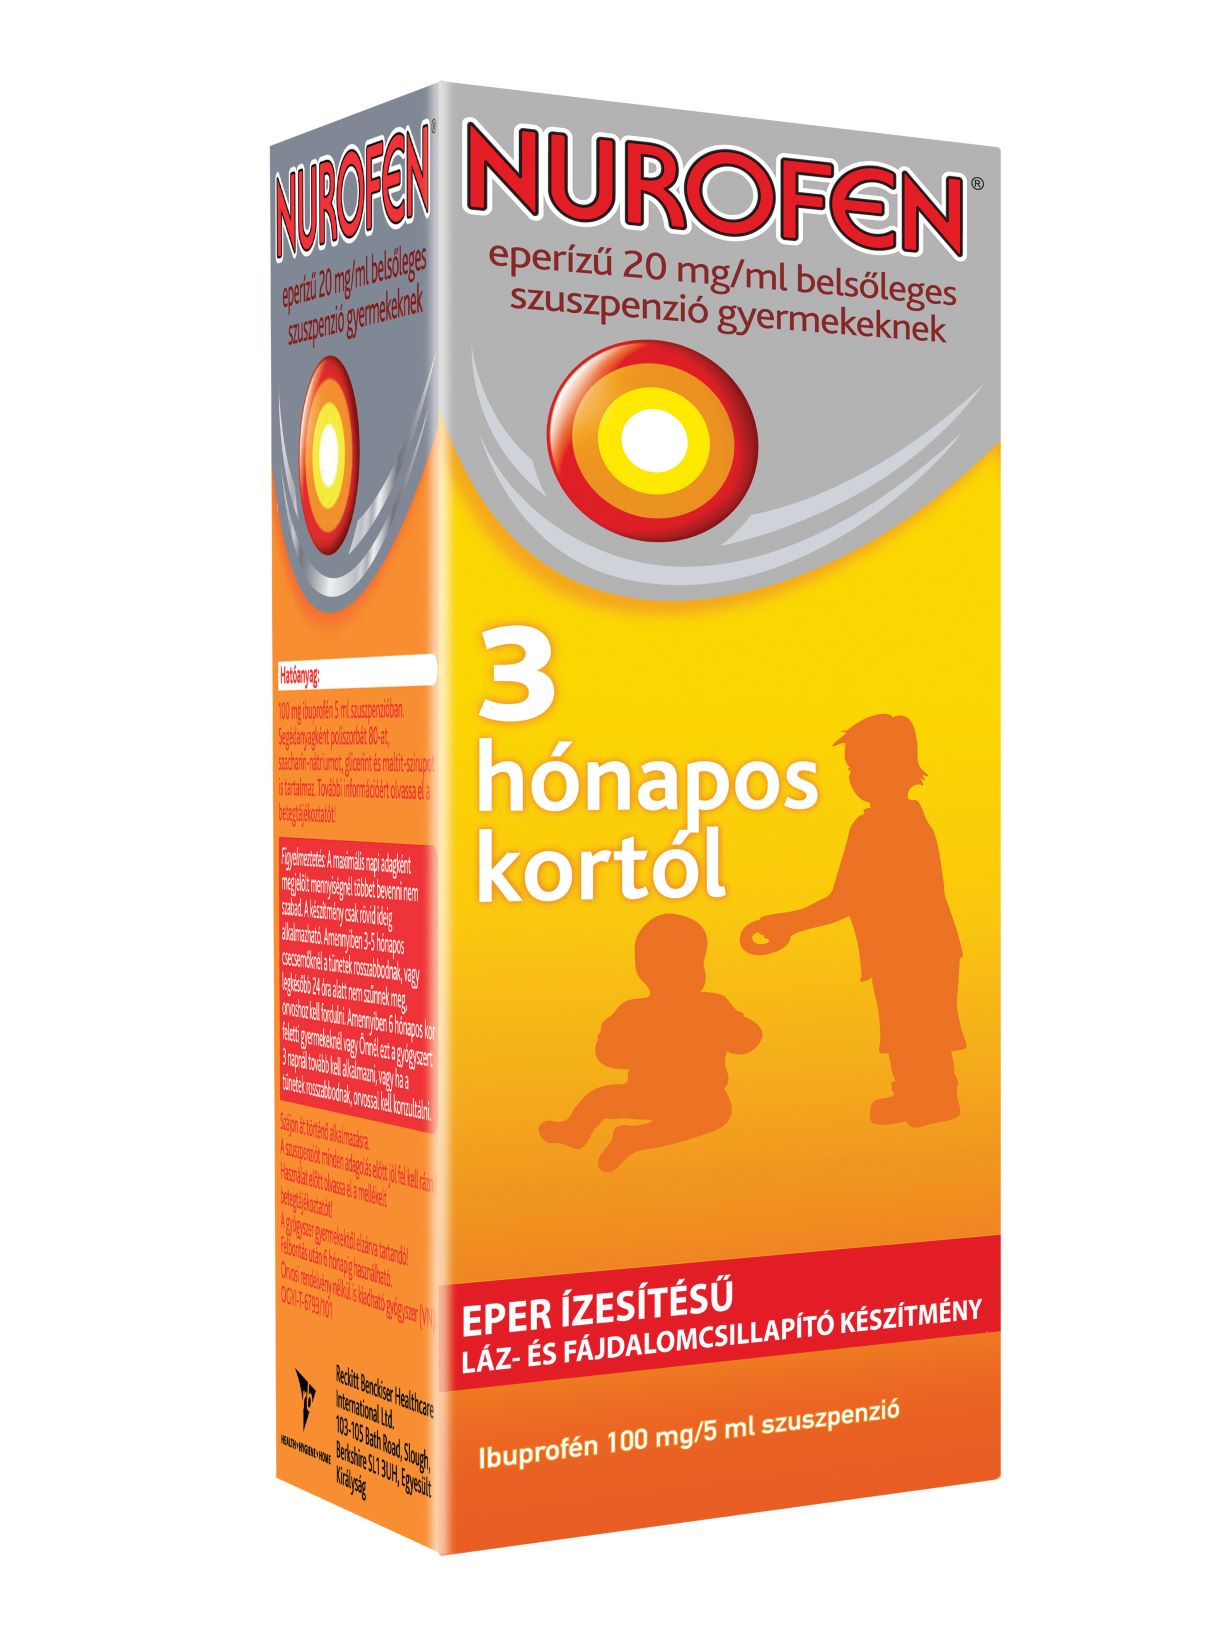 Nurofen eperízű 20 mg/ml belsőleges szuszpenzió gyermekeknek